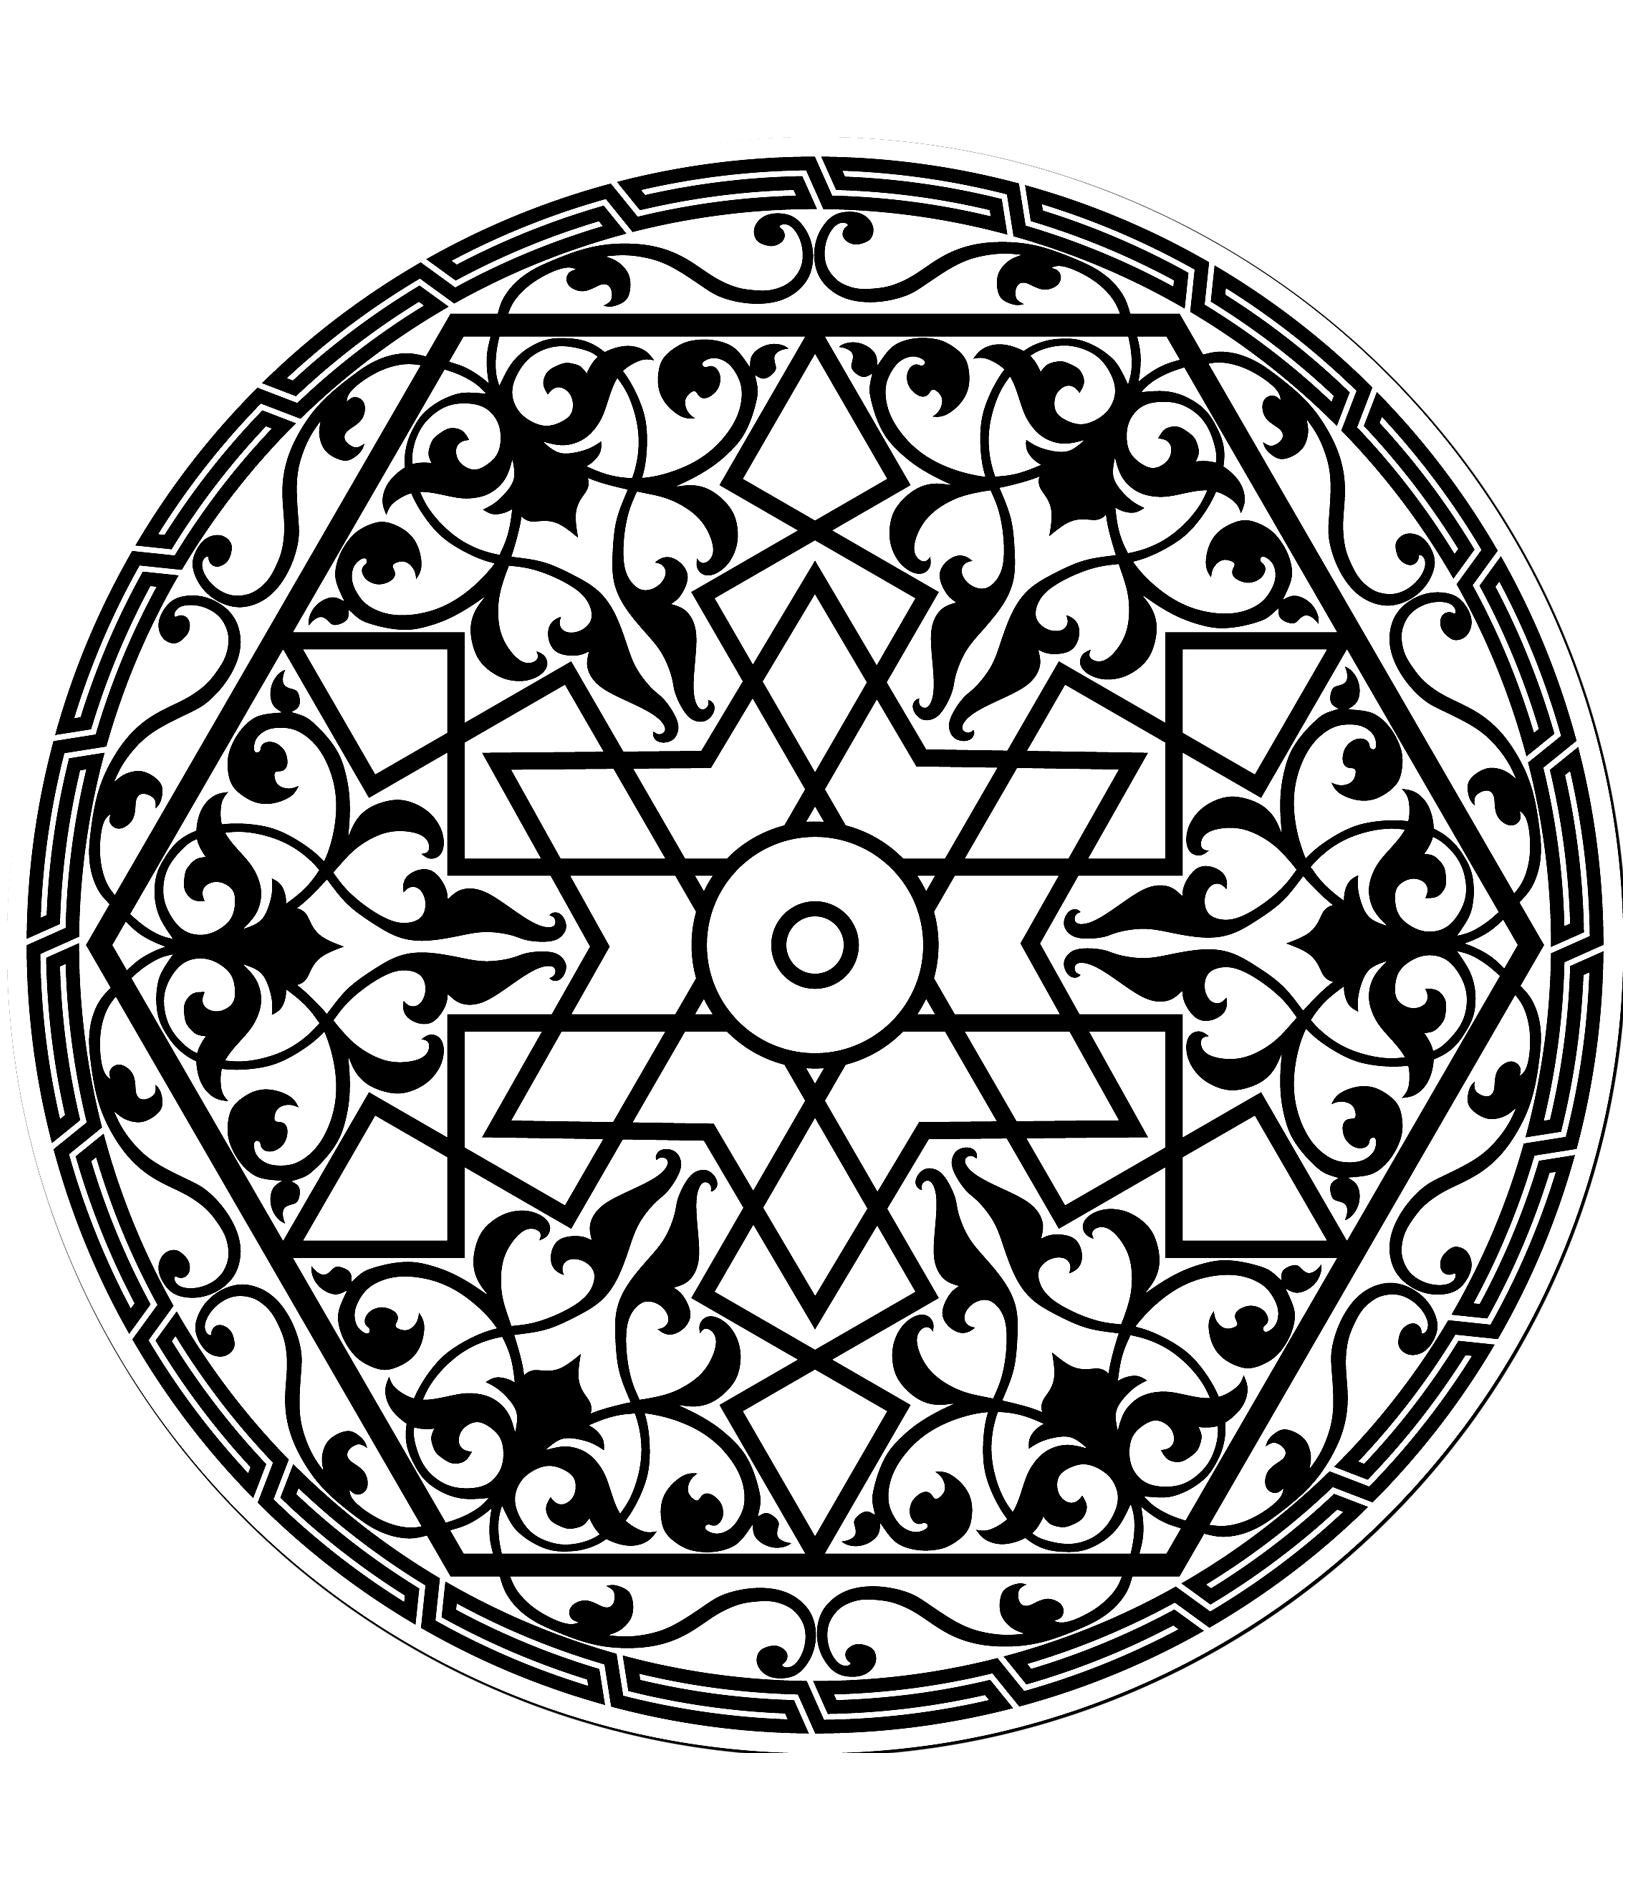 Disegno di un motivo arabo con una stella al centro